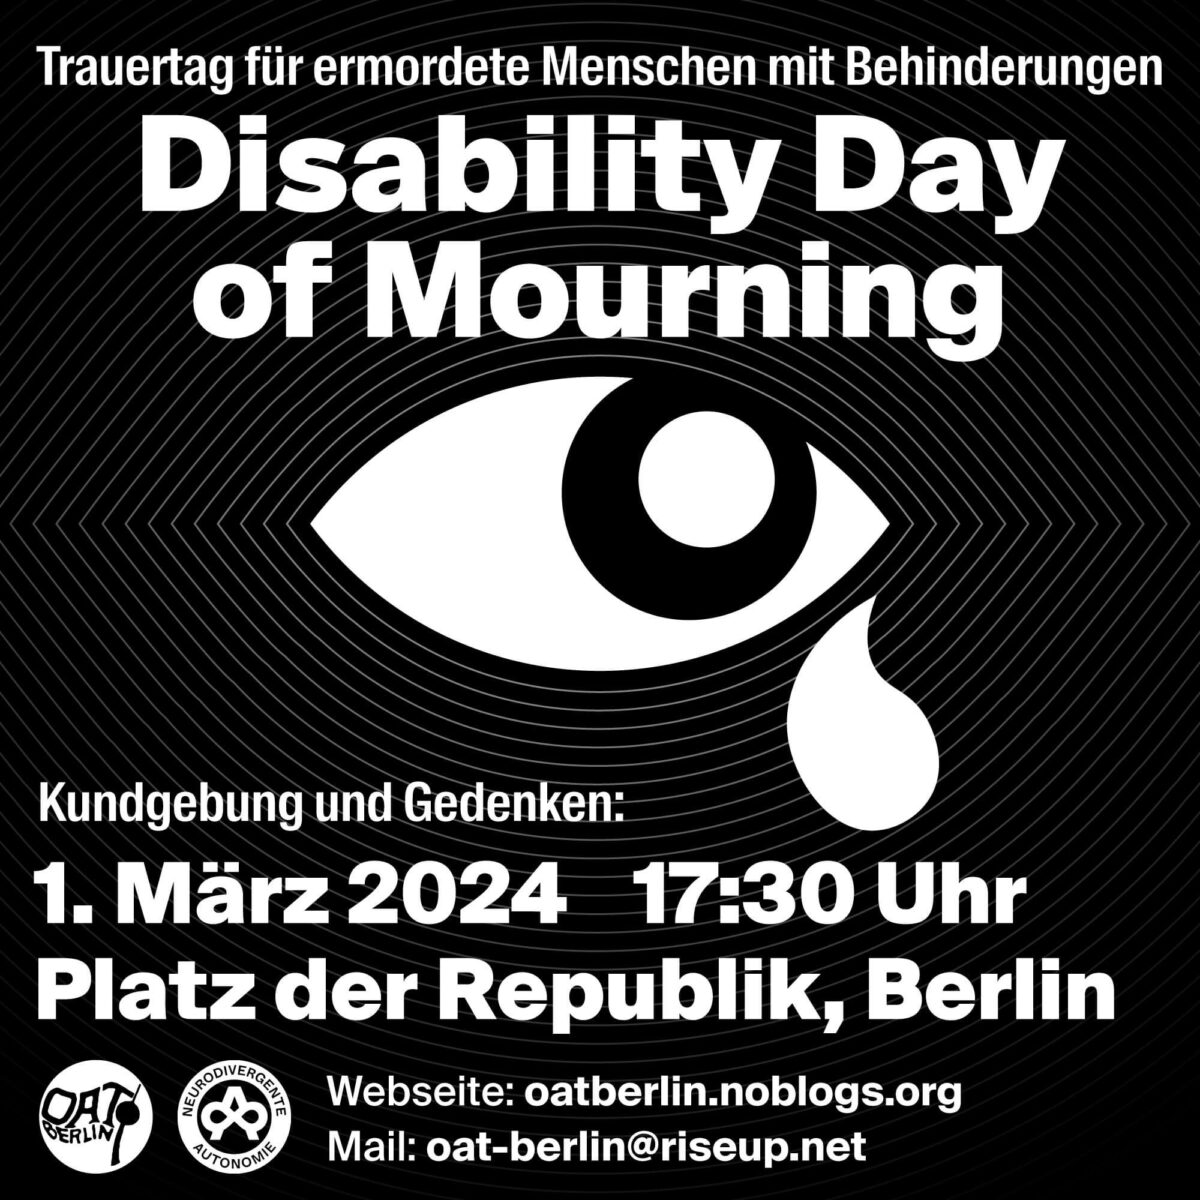 Disability Day of Mourning Gedenken am 1. März 2024 in Berlin